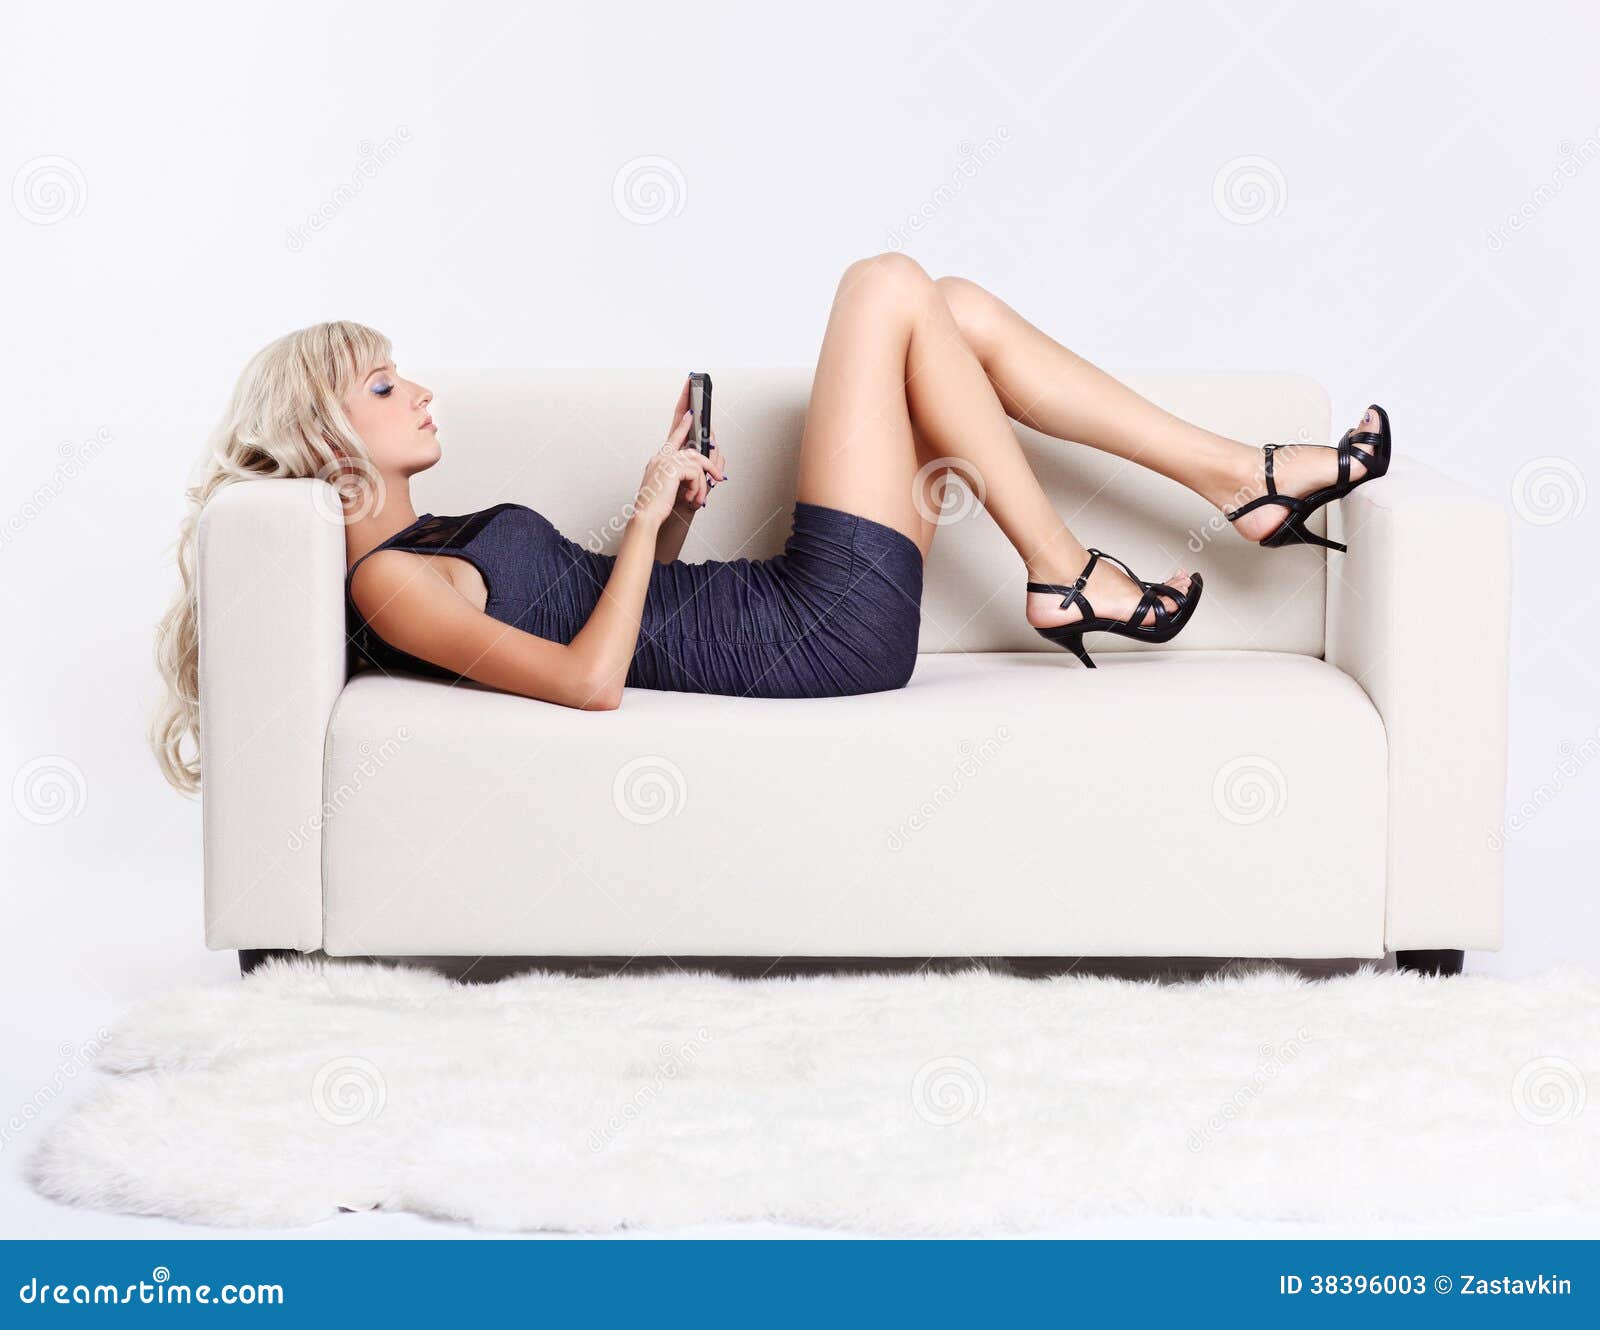 Парочка на белом диване крокус. Девушка лежит на диване. Блондинка девушка на диване лежит. Девушка со смартфоном на диване. Девушка полулежа на диване.